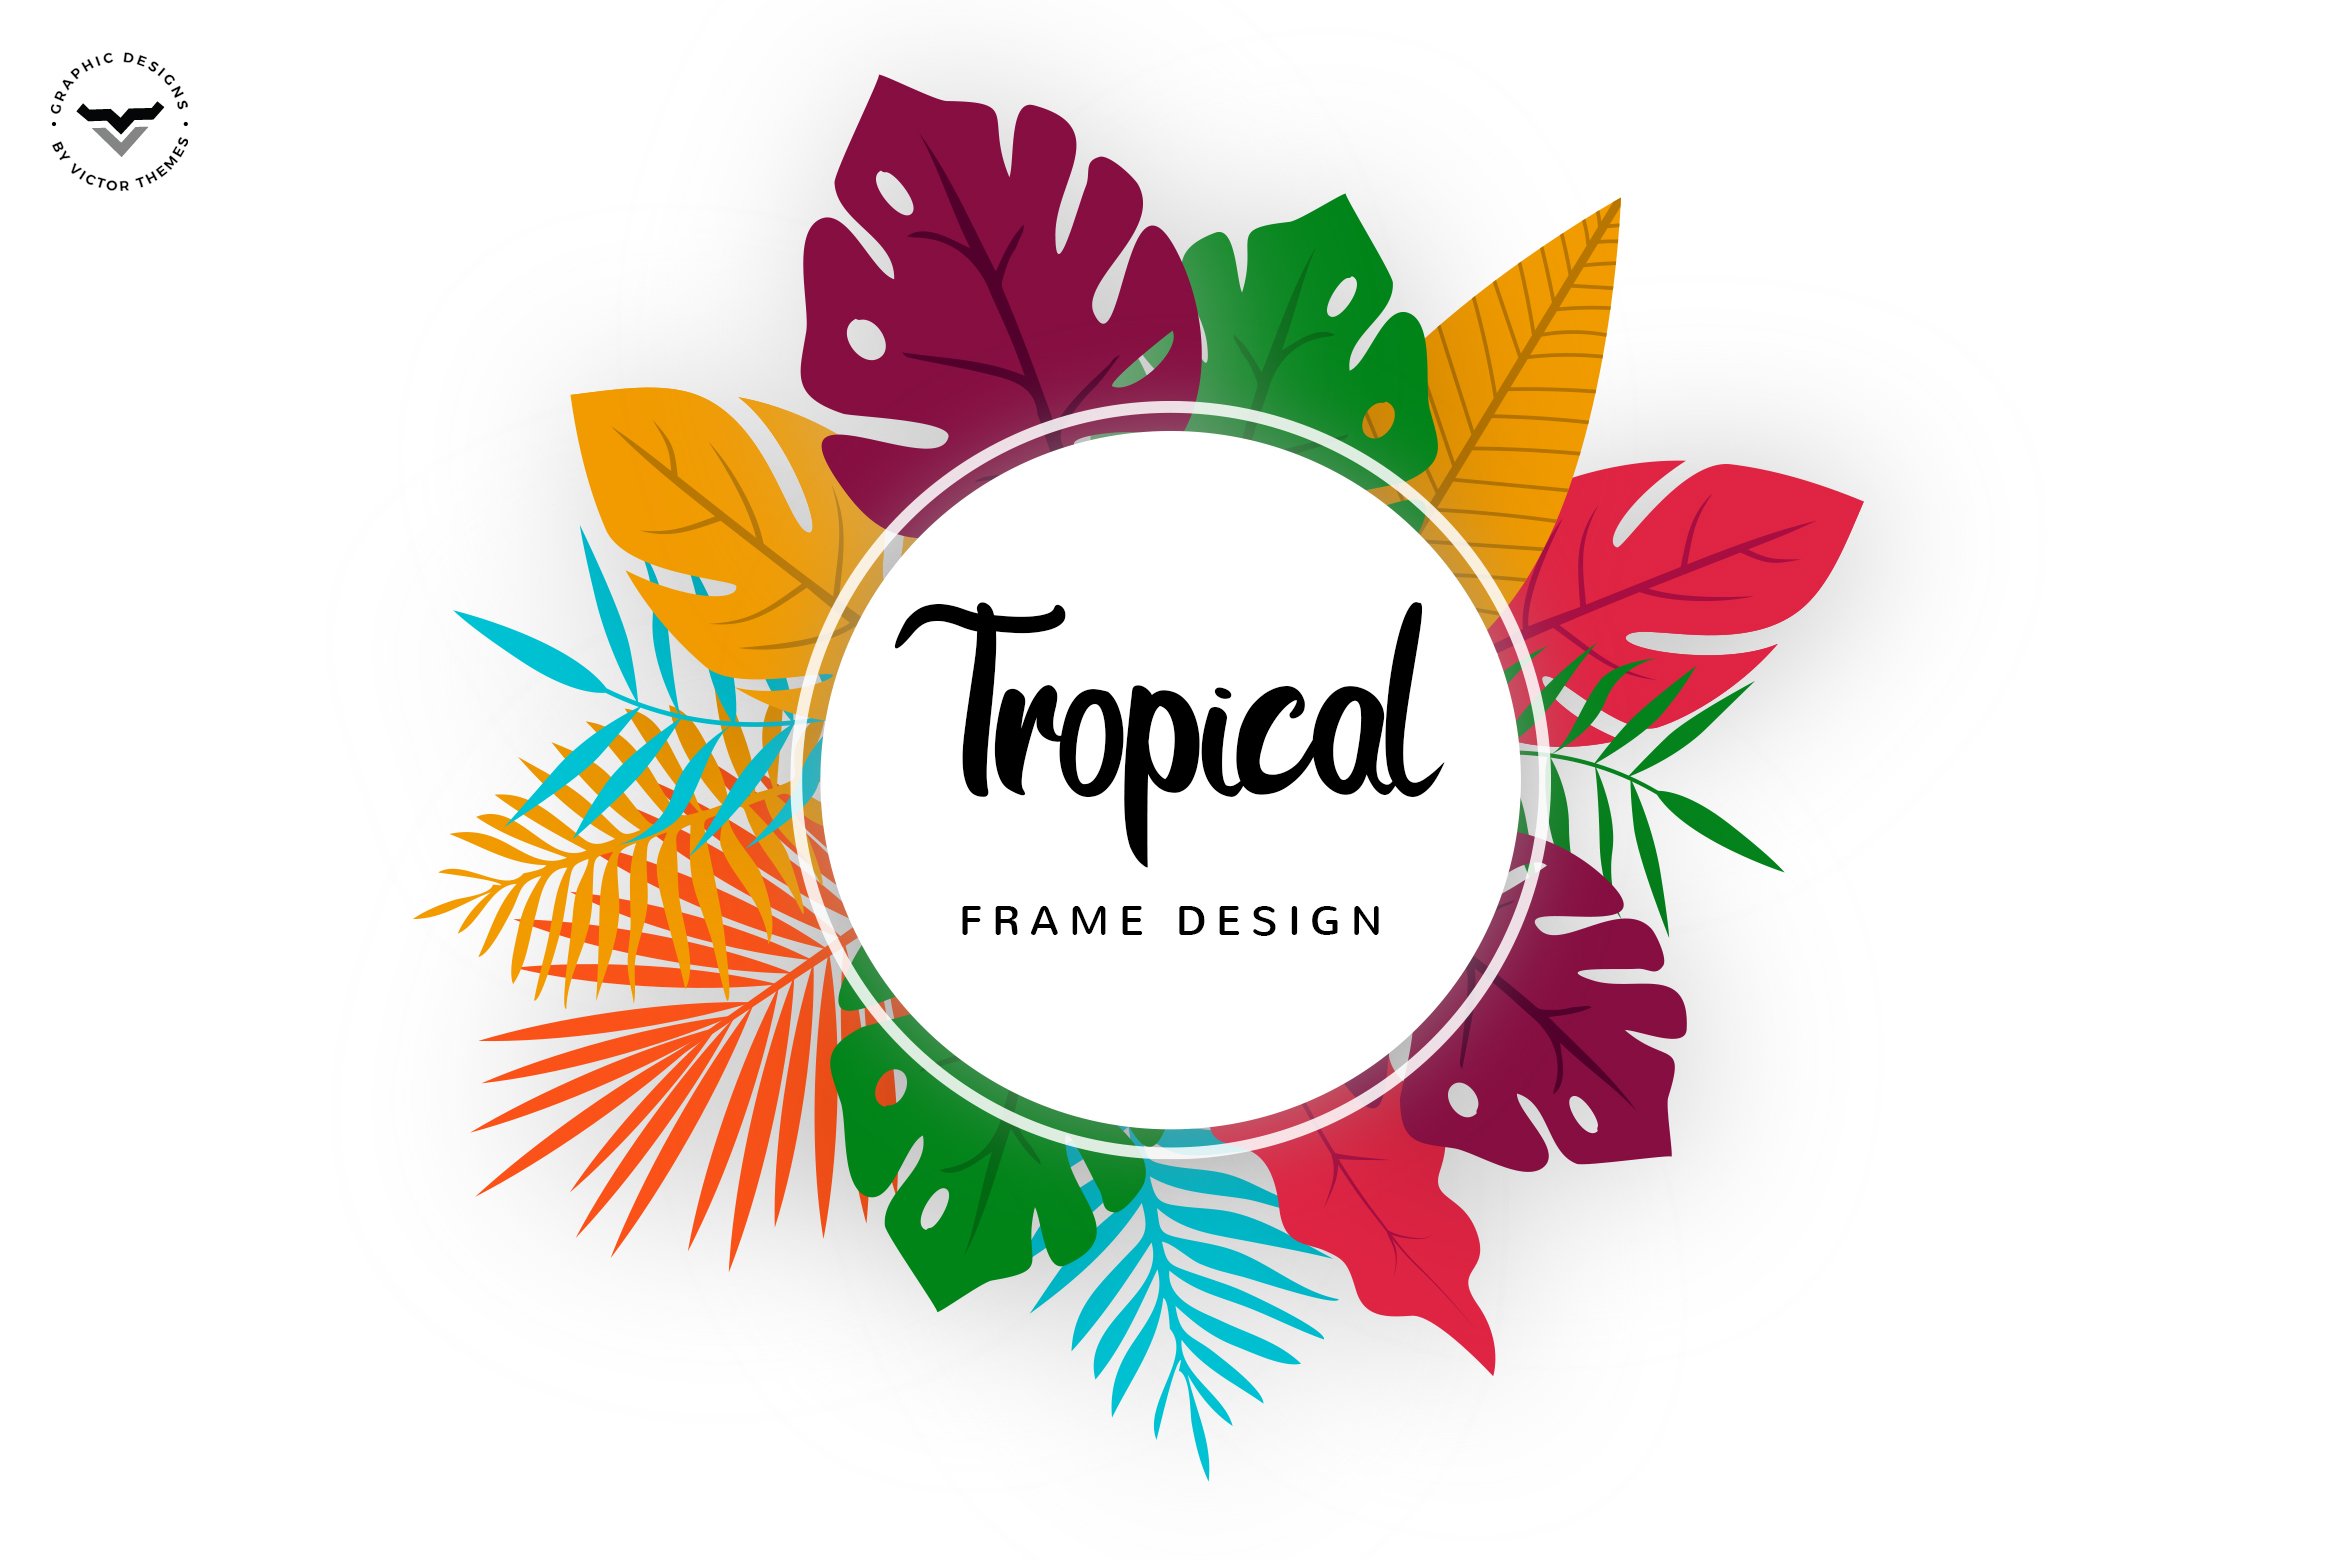 Tropical Frame Design